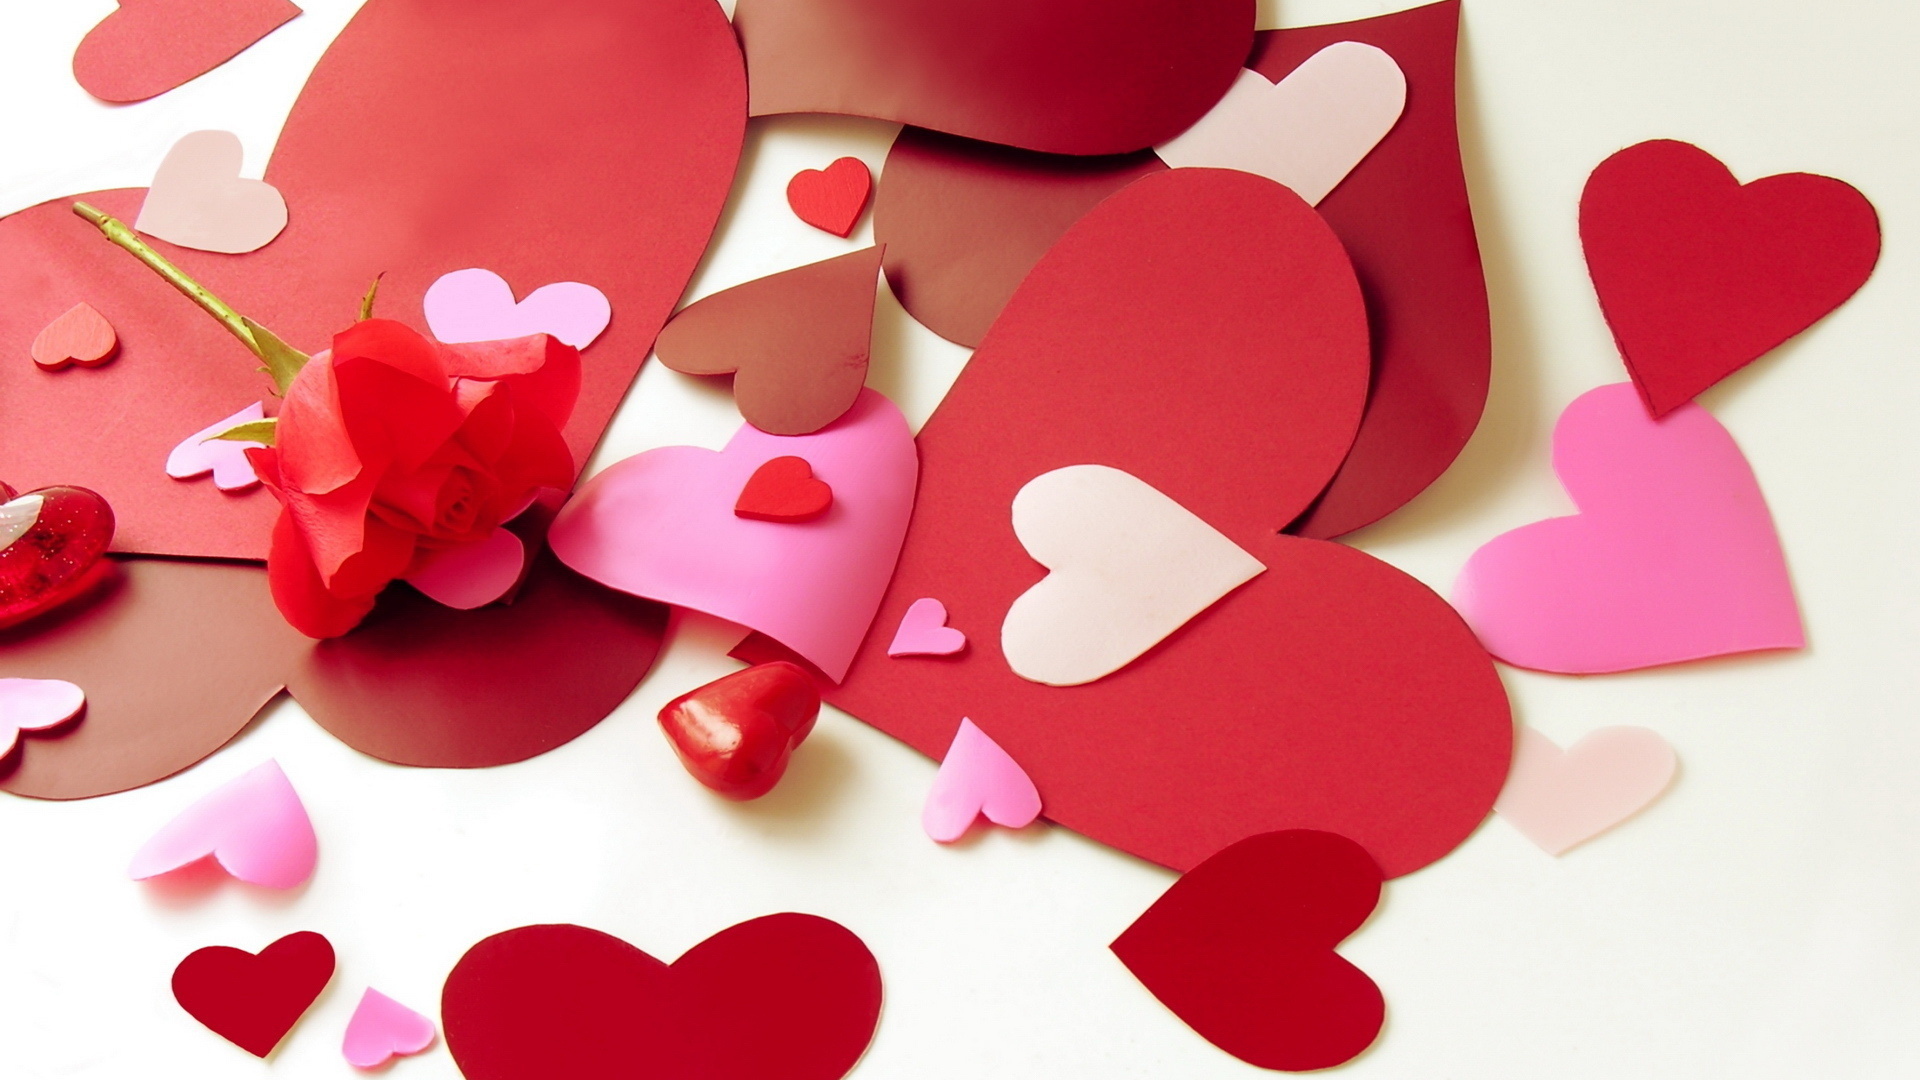 Любовь, влюбленность и валентинки – всё по-взрослому?